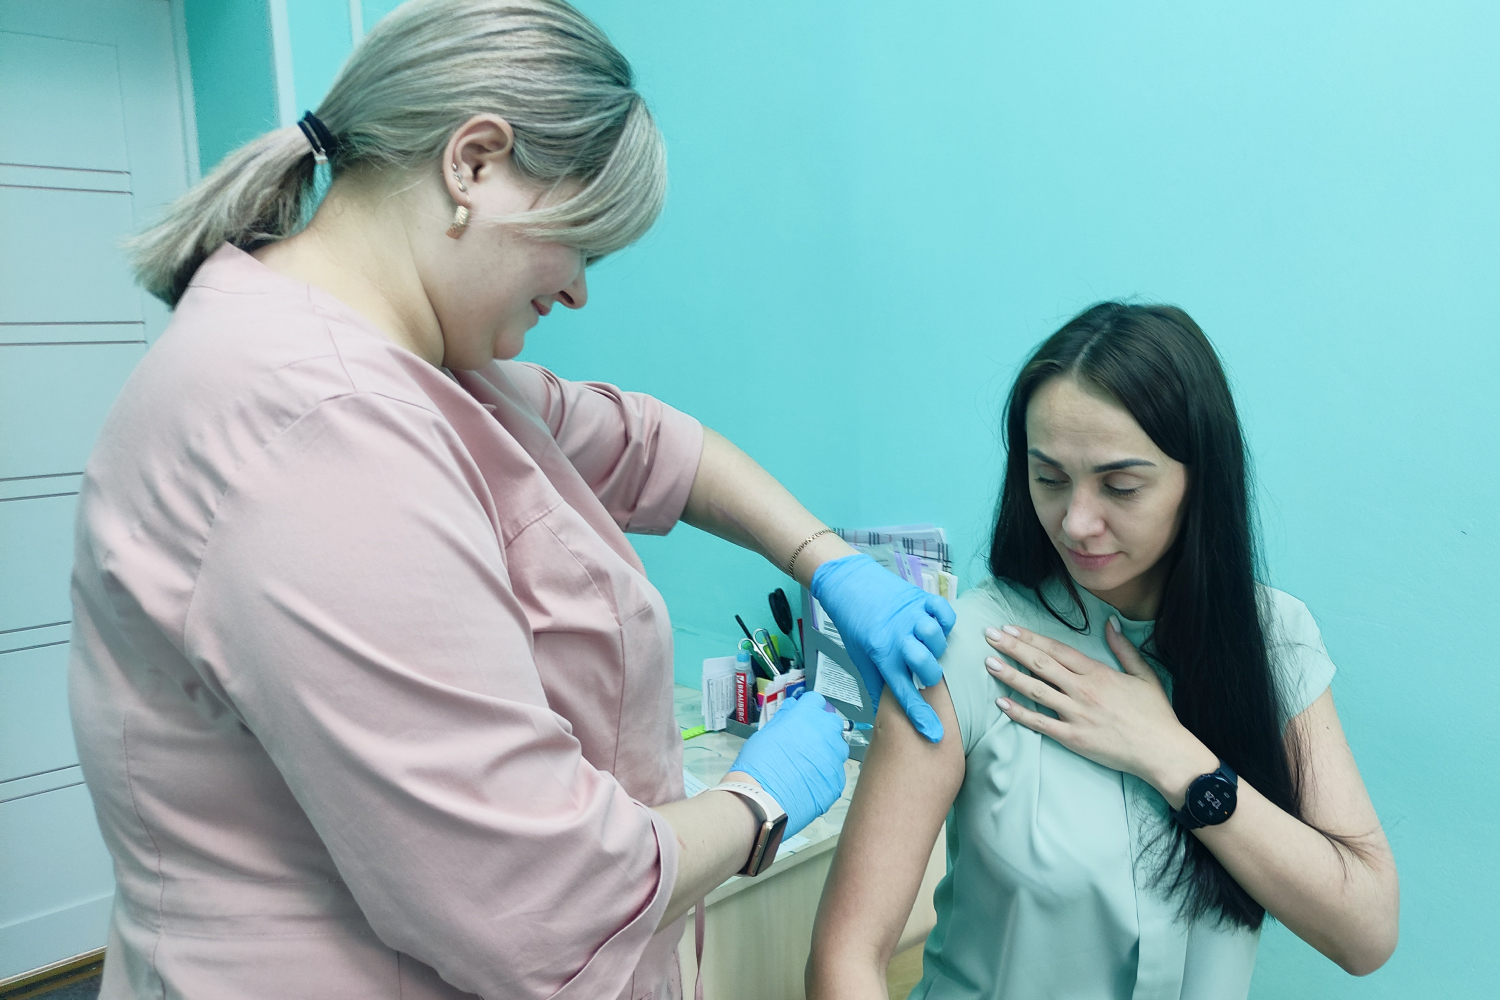 На разрезе Пермяковский идет бесплатная вакцинация против клещевого энцефалита. Разрез Пермяковский